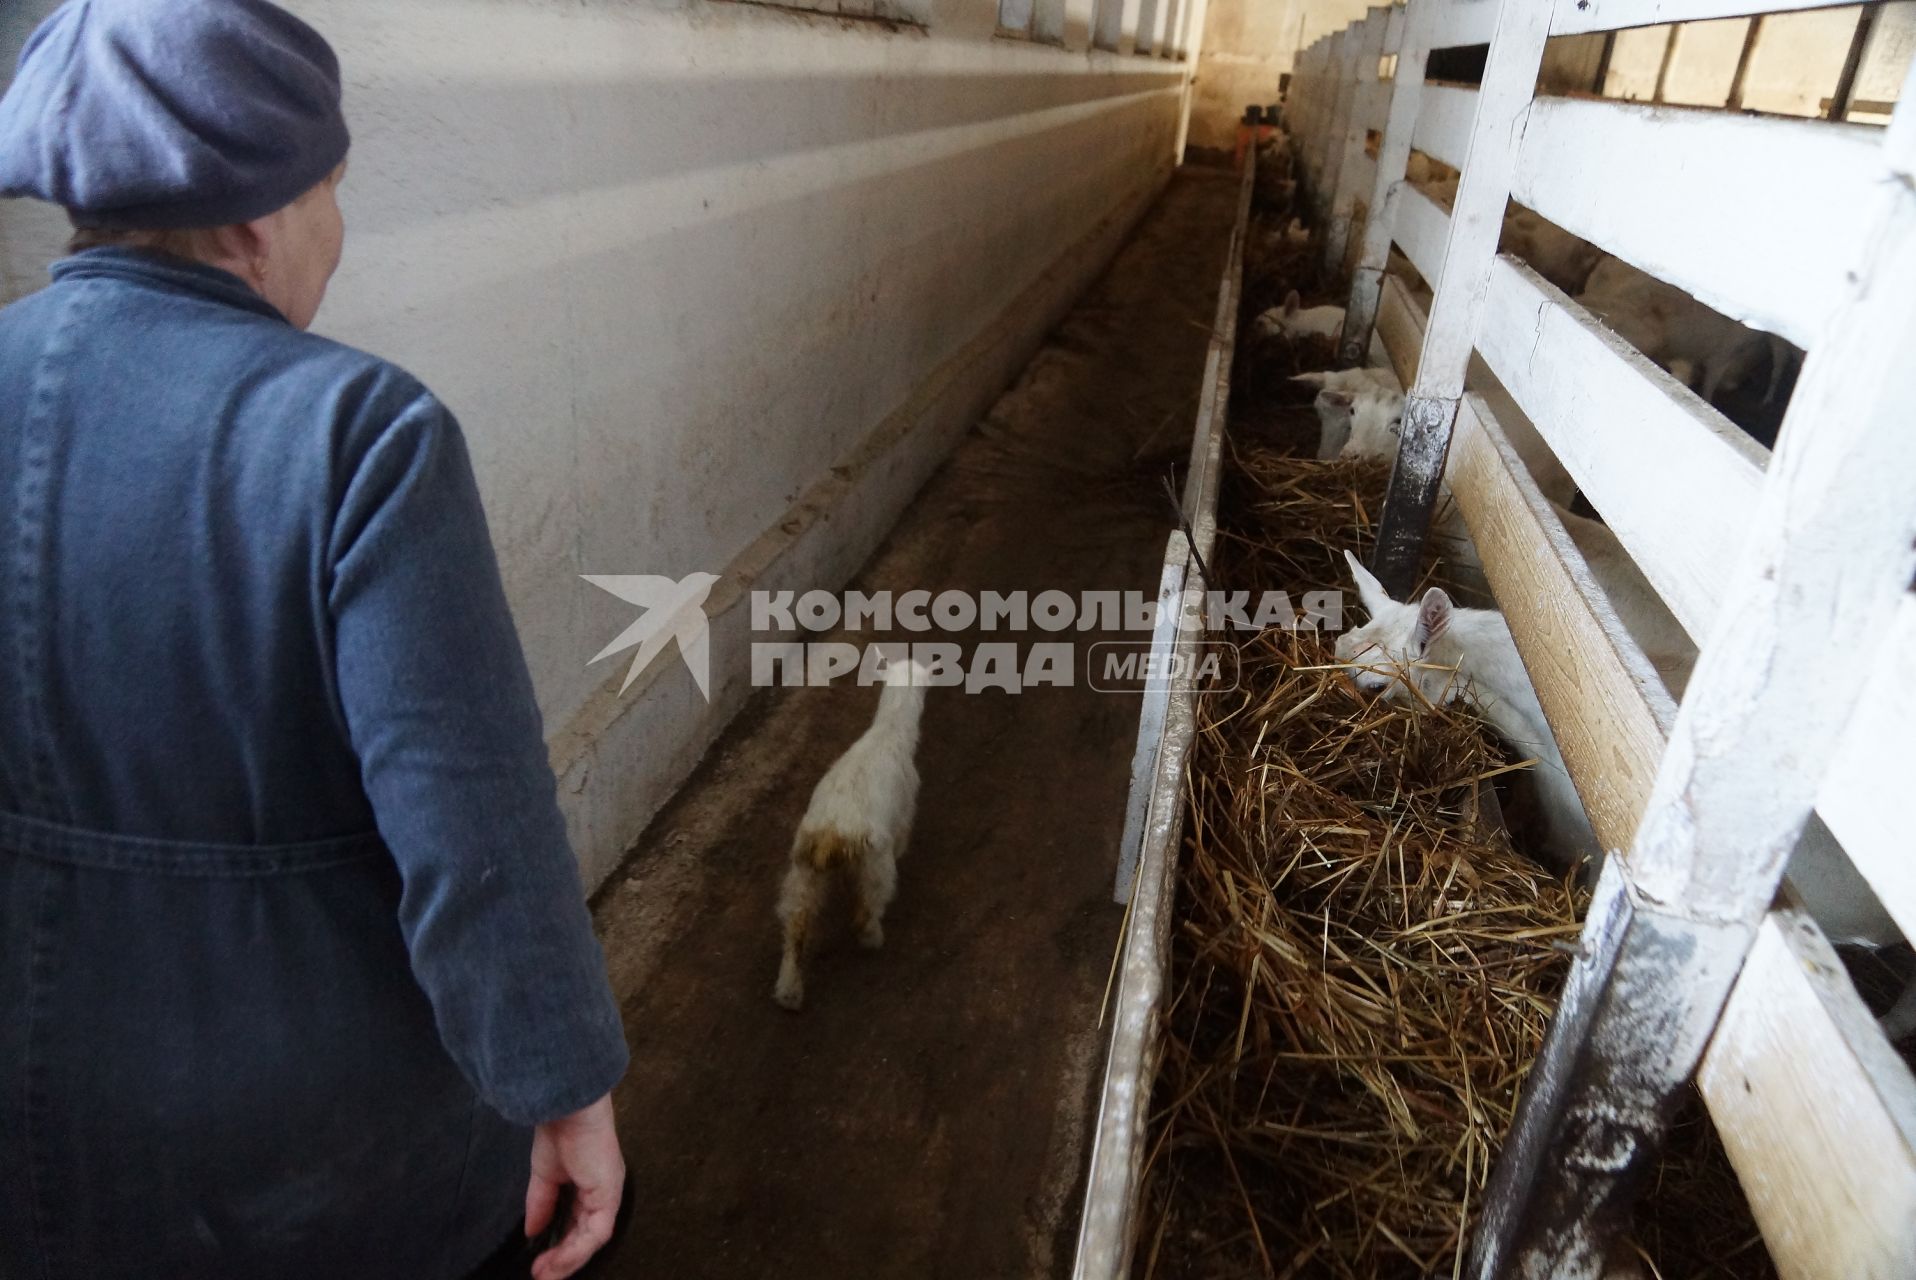 доярка гонится за маленьким козленком сбежавшим из загона, на сельхозпредприятии по выращиванию коз и производству козьего молока – научно-производственный кооператив «Ачитский»